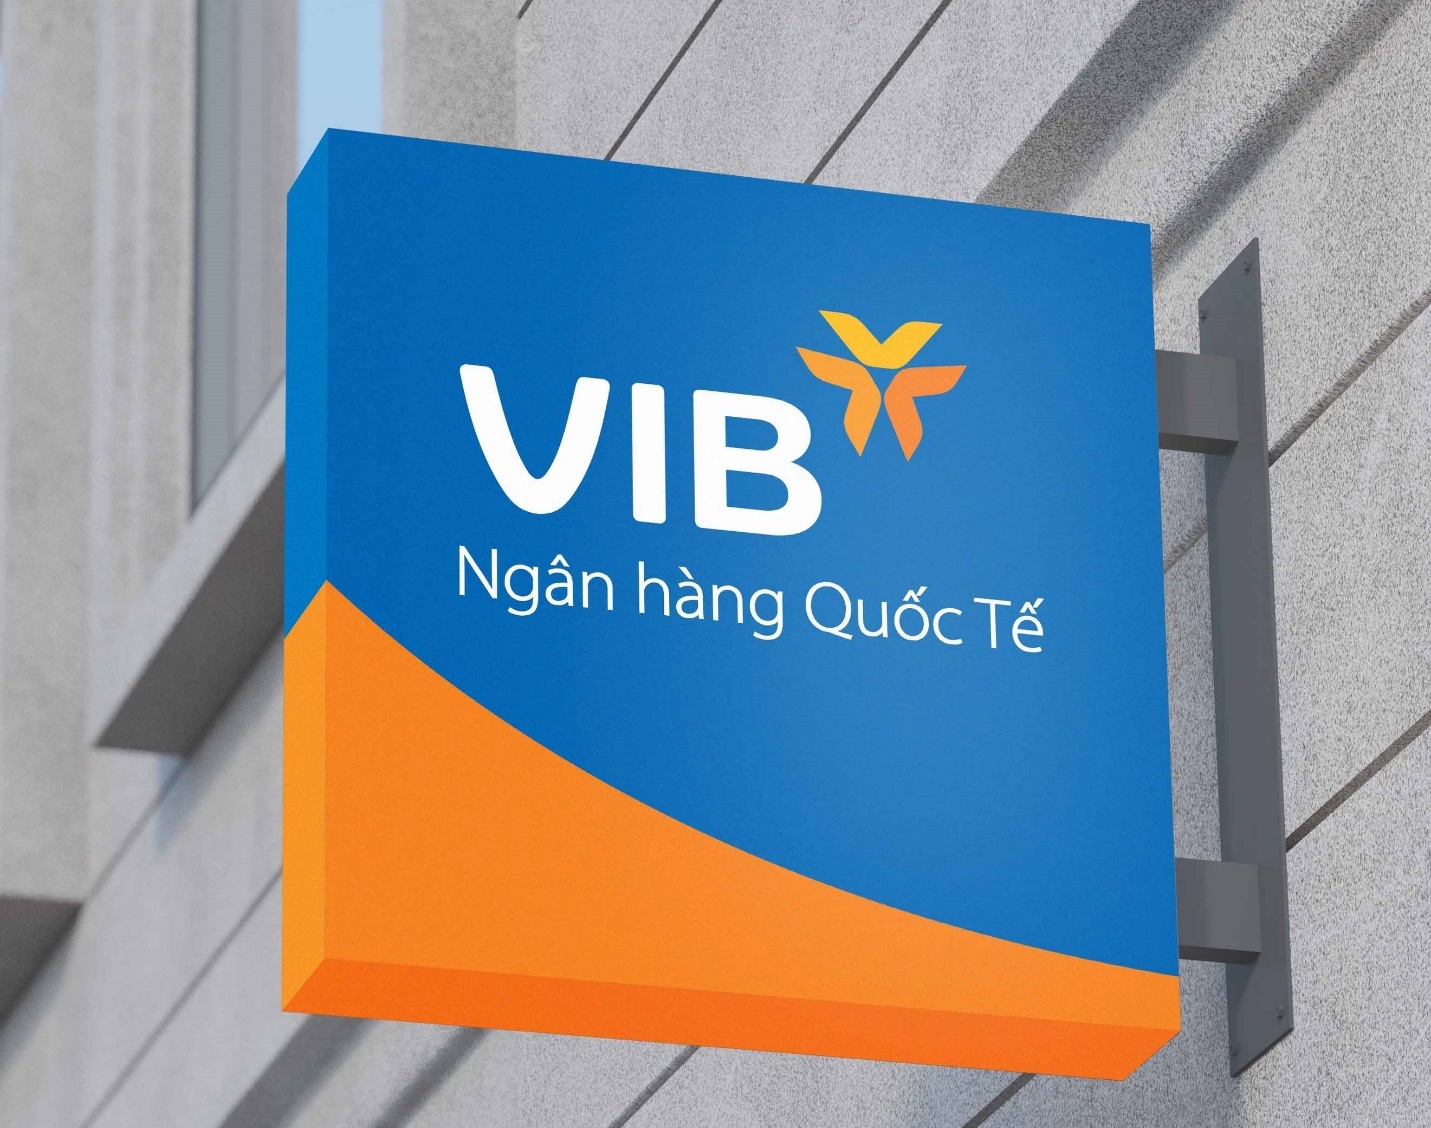 VIB thuộc nhóm đầu ngành về hiệu quả kinh doanh, lợi nhuận vượt 5.000 tỷ. Ảnh: VIB.